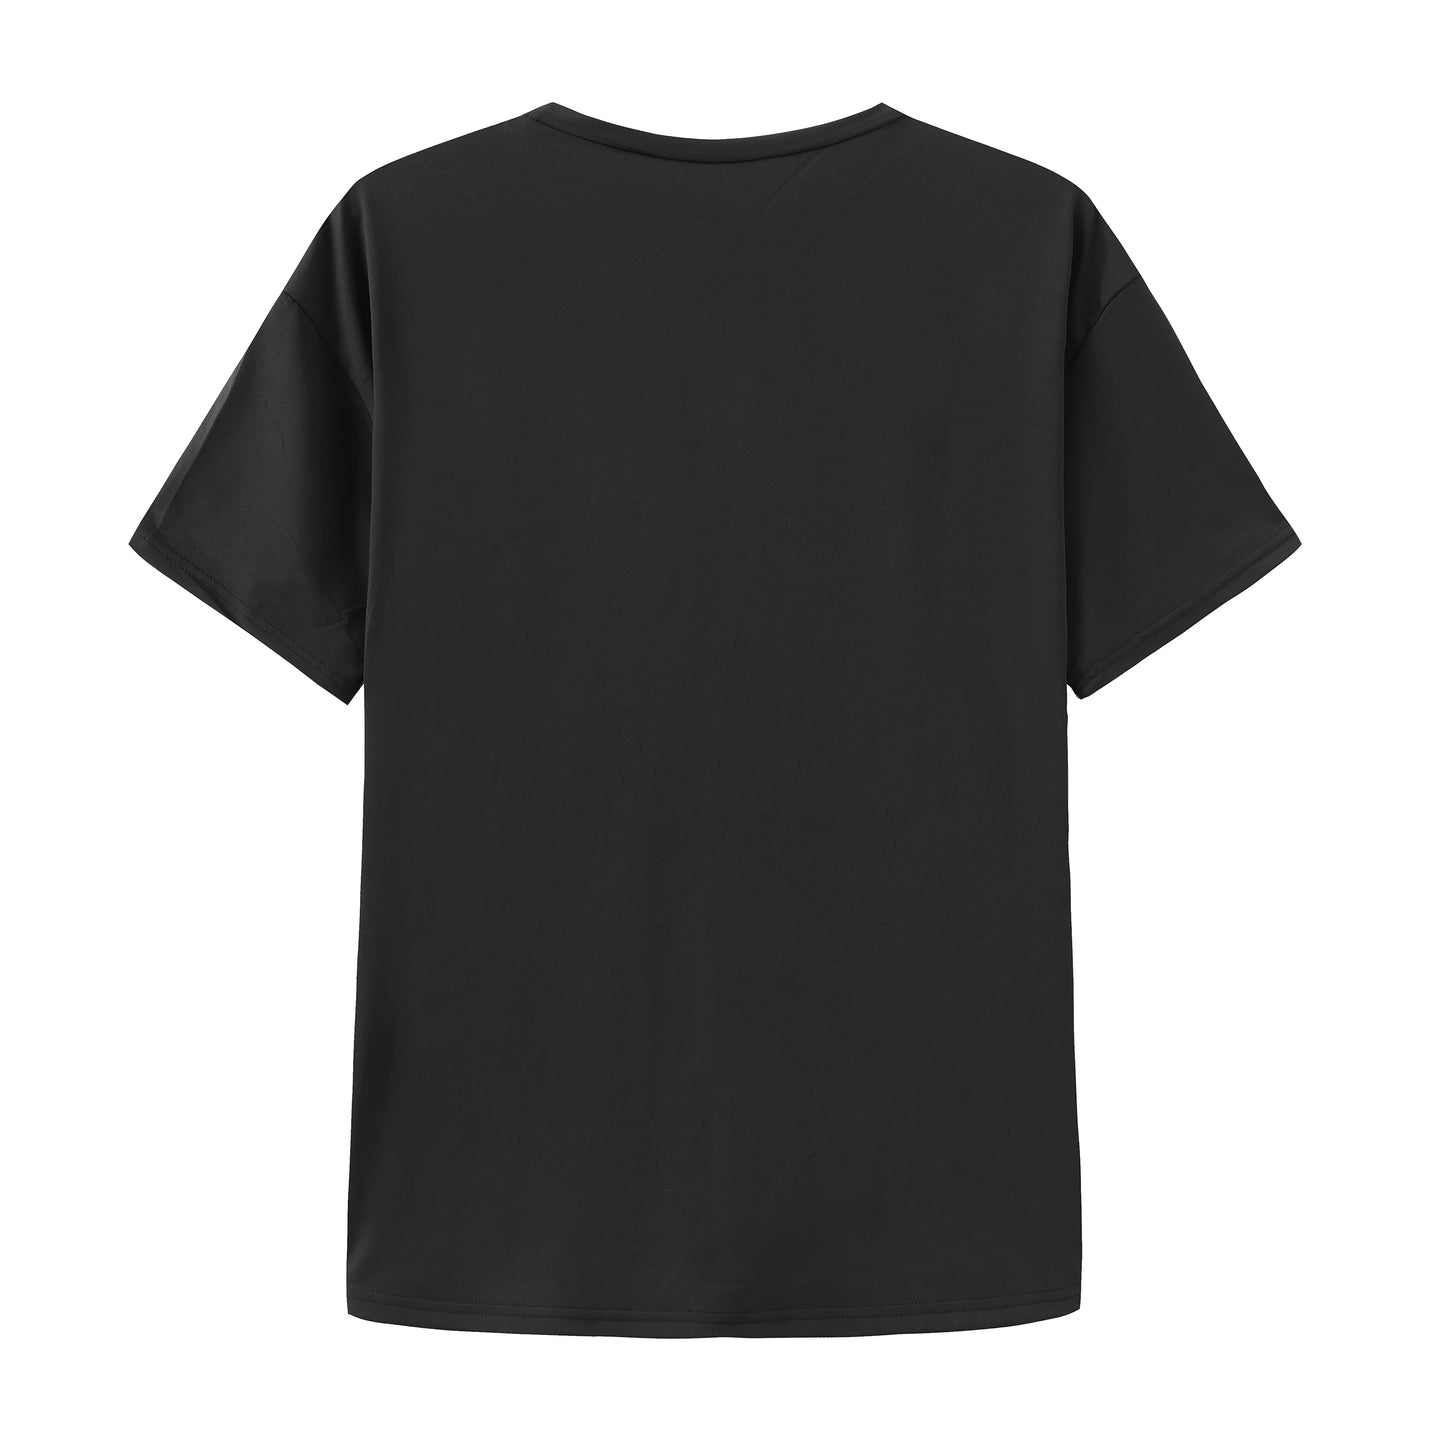 New Women's Round Neck Dark Terror Pattern Short Sleeve T-shirt